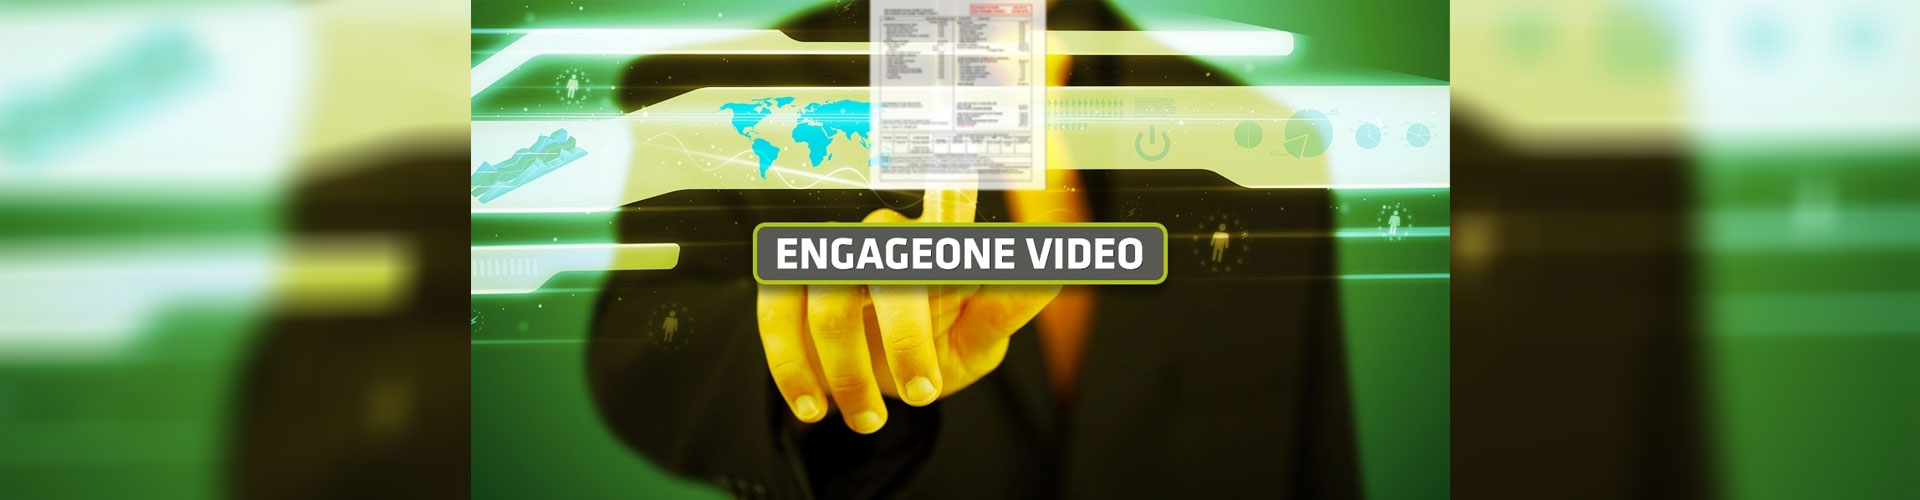 İnteraktif Kişiselleştirilmiş İletişim: EngageOne Video!